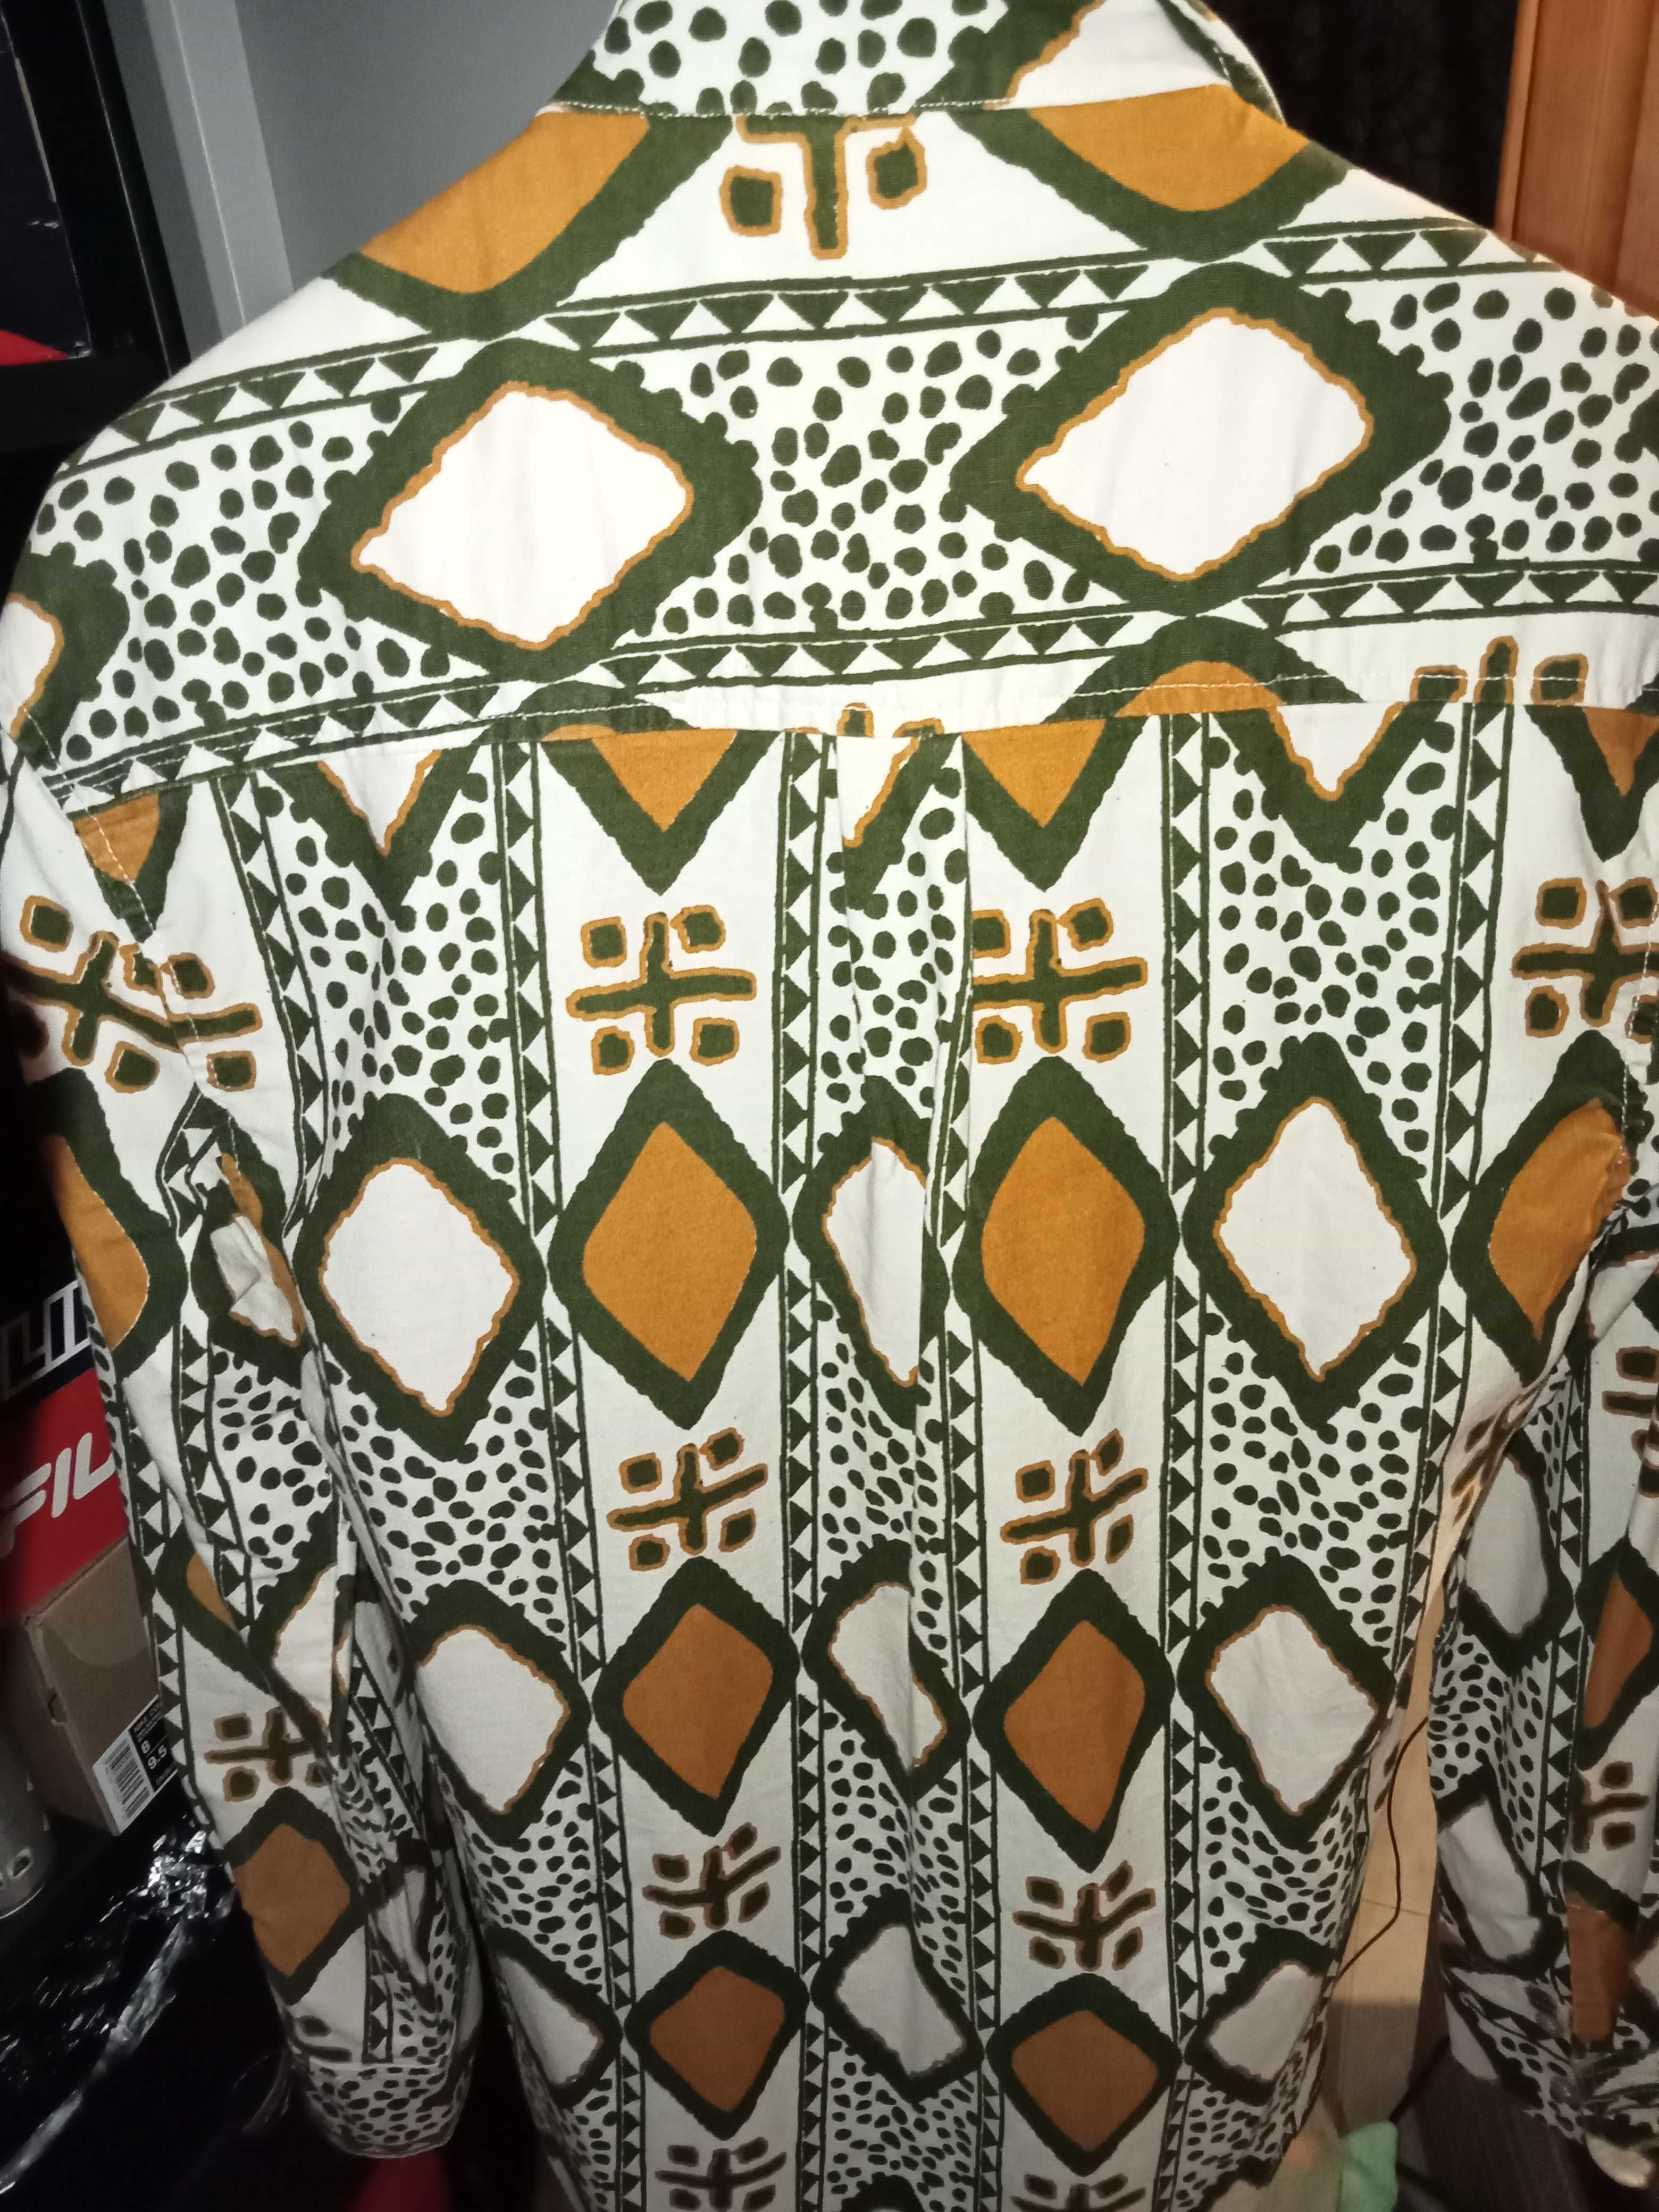 Camisa pano e padrão africano tamanho S/ M,óptimo estado